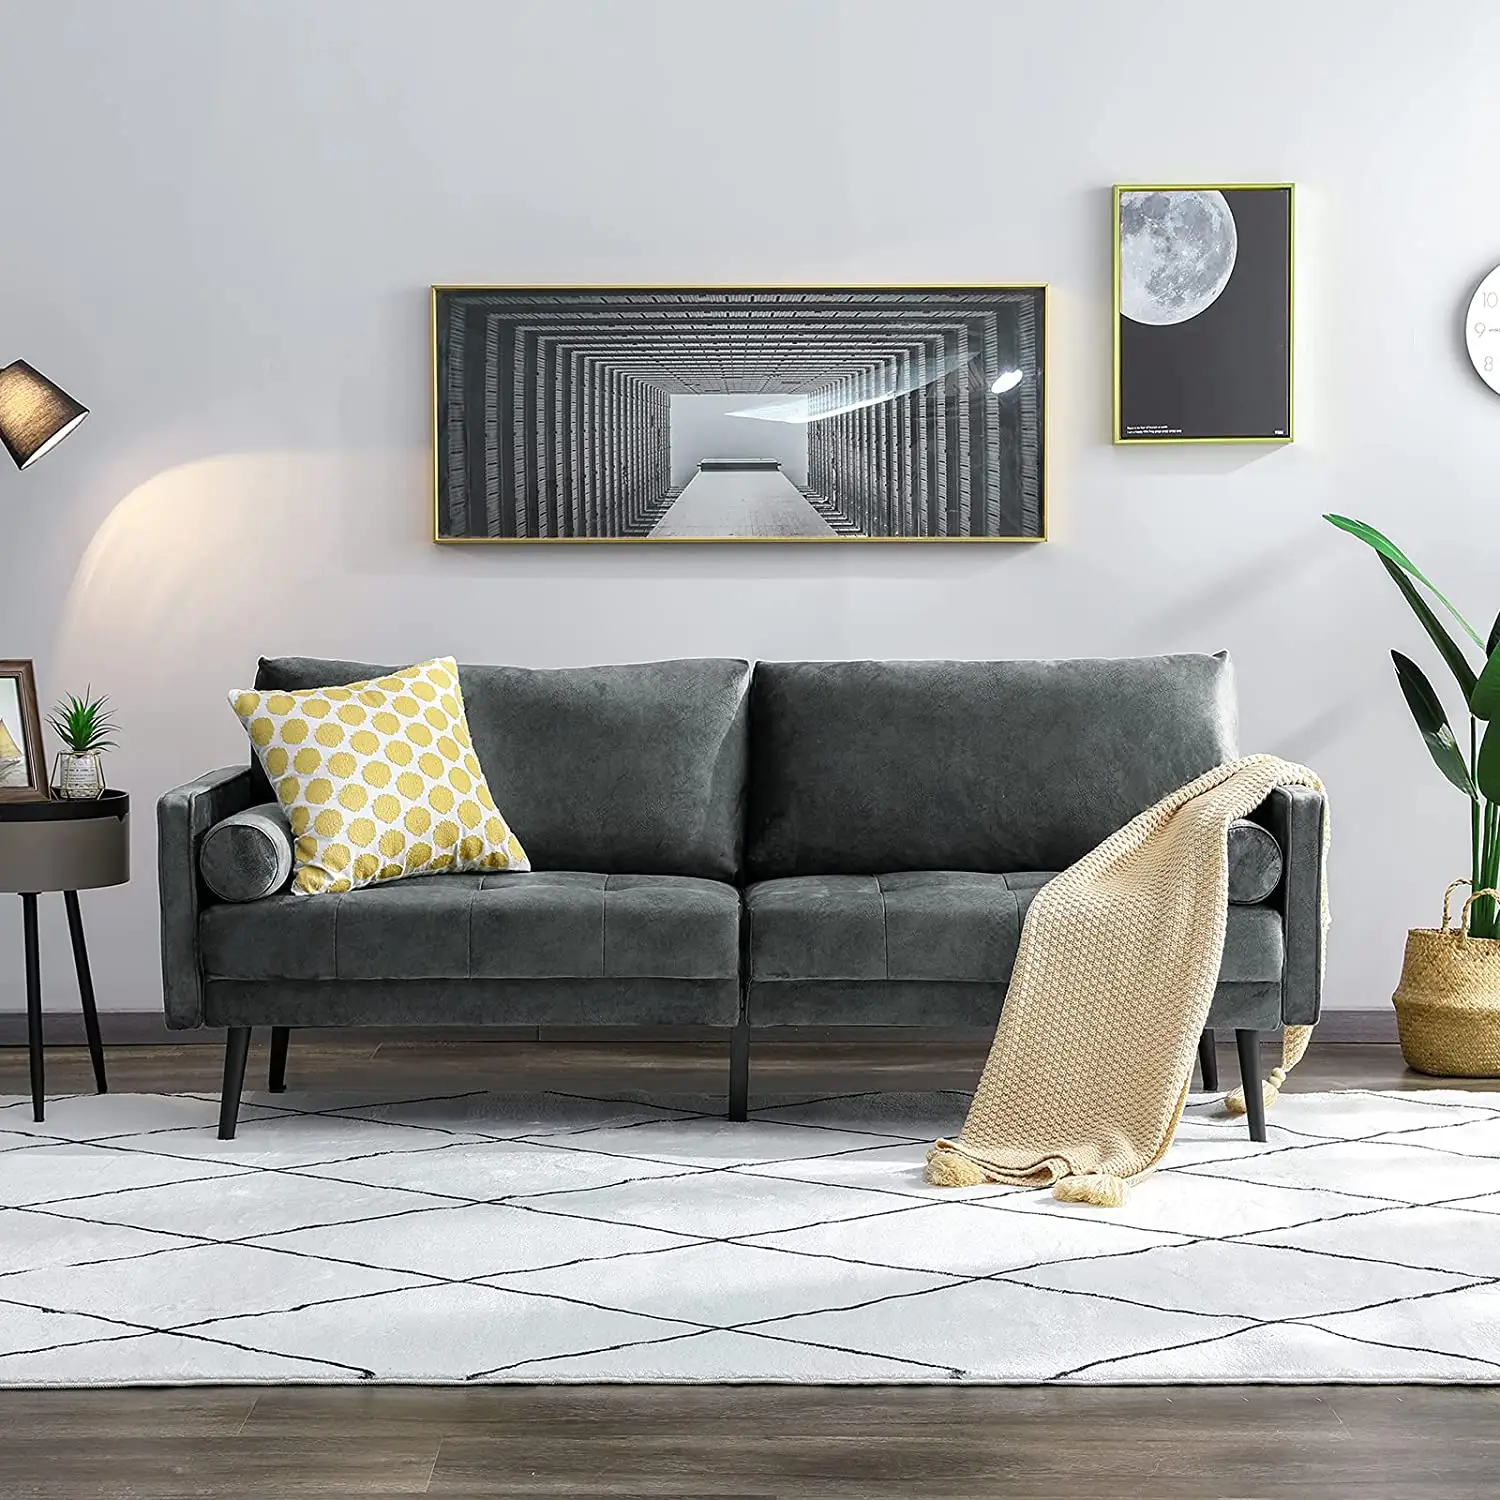 Billige Couch mit Leinen Stoff für kleine Wohnungen Gästezimmer Mitte des Jahrhunderts moderne Liebes sitz Sofa mit Holzrahmen